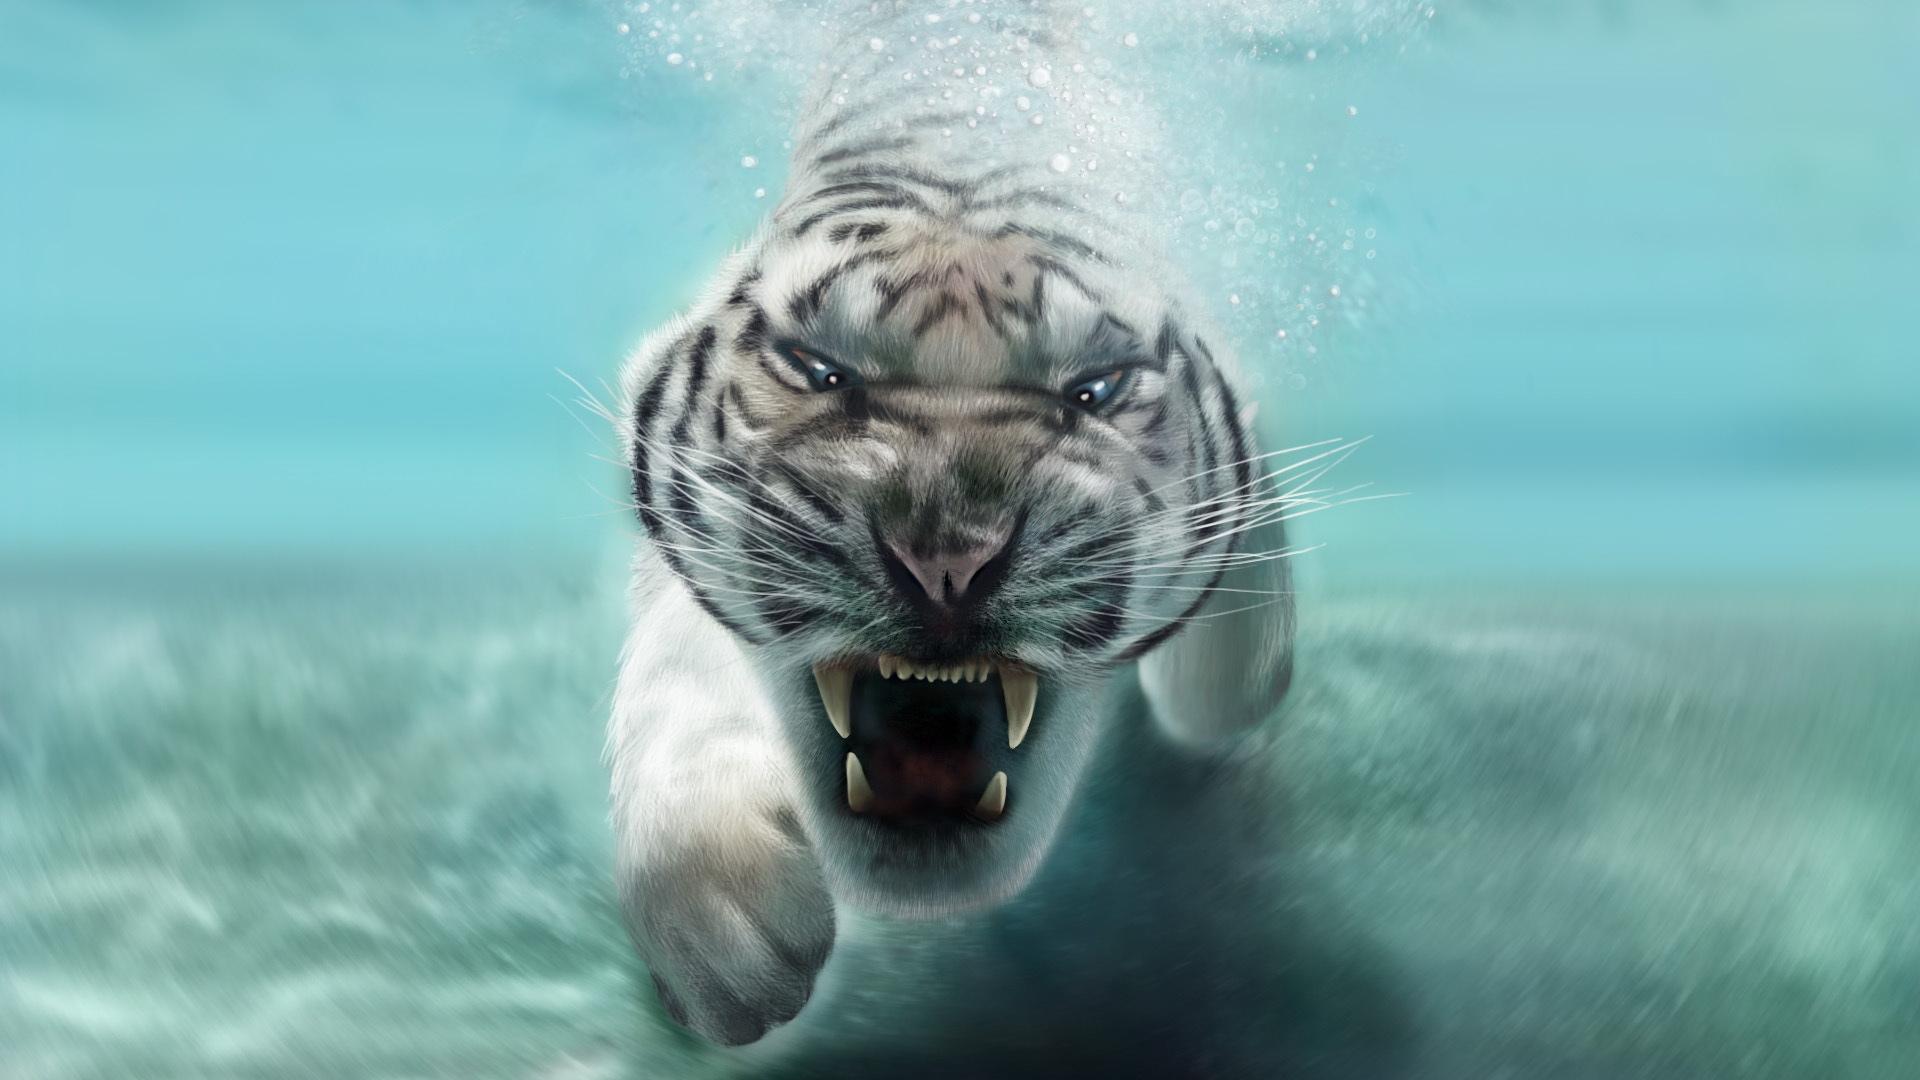 Descarga gratuita de fondo de pantalla para móvil de Animales, Gatos, Tigre, Tigre Blanco, Submarina.